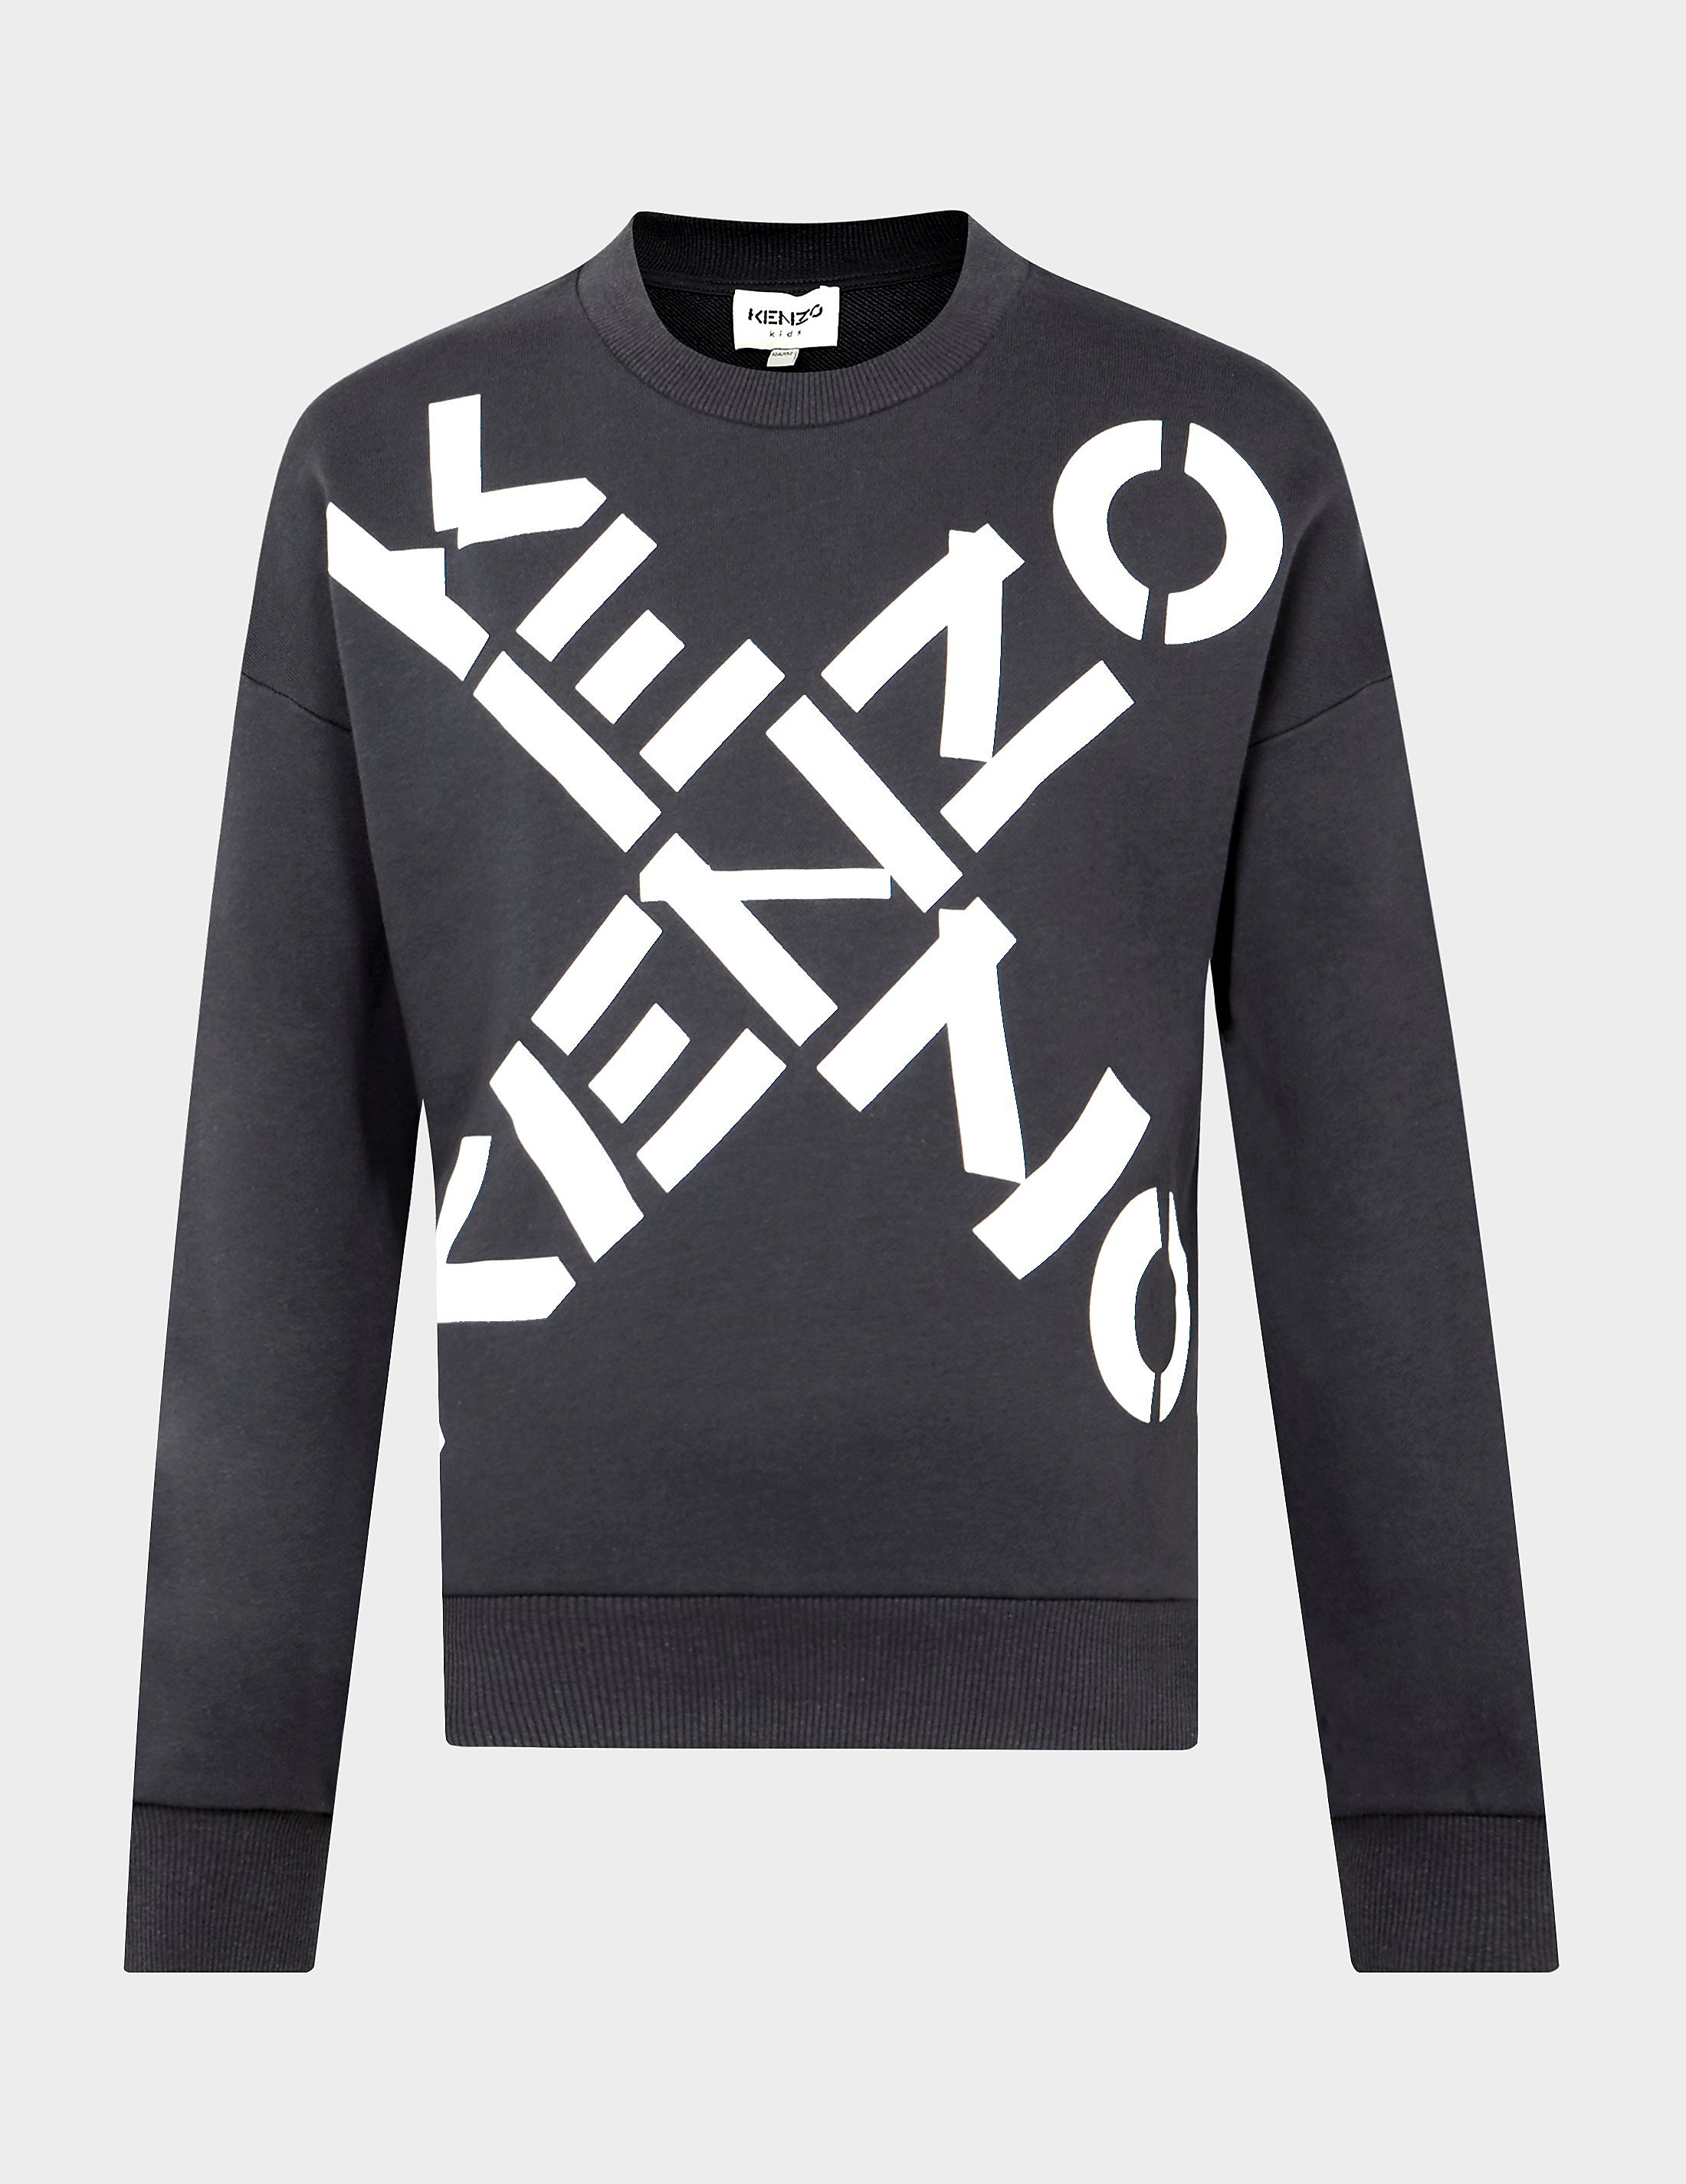 KENZO Cross Sweatshirt Grey, Grey product